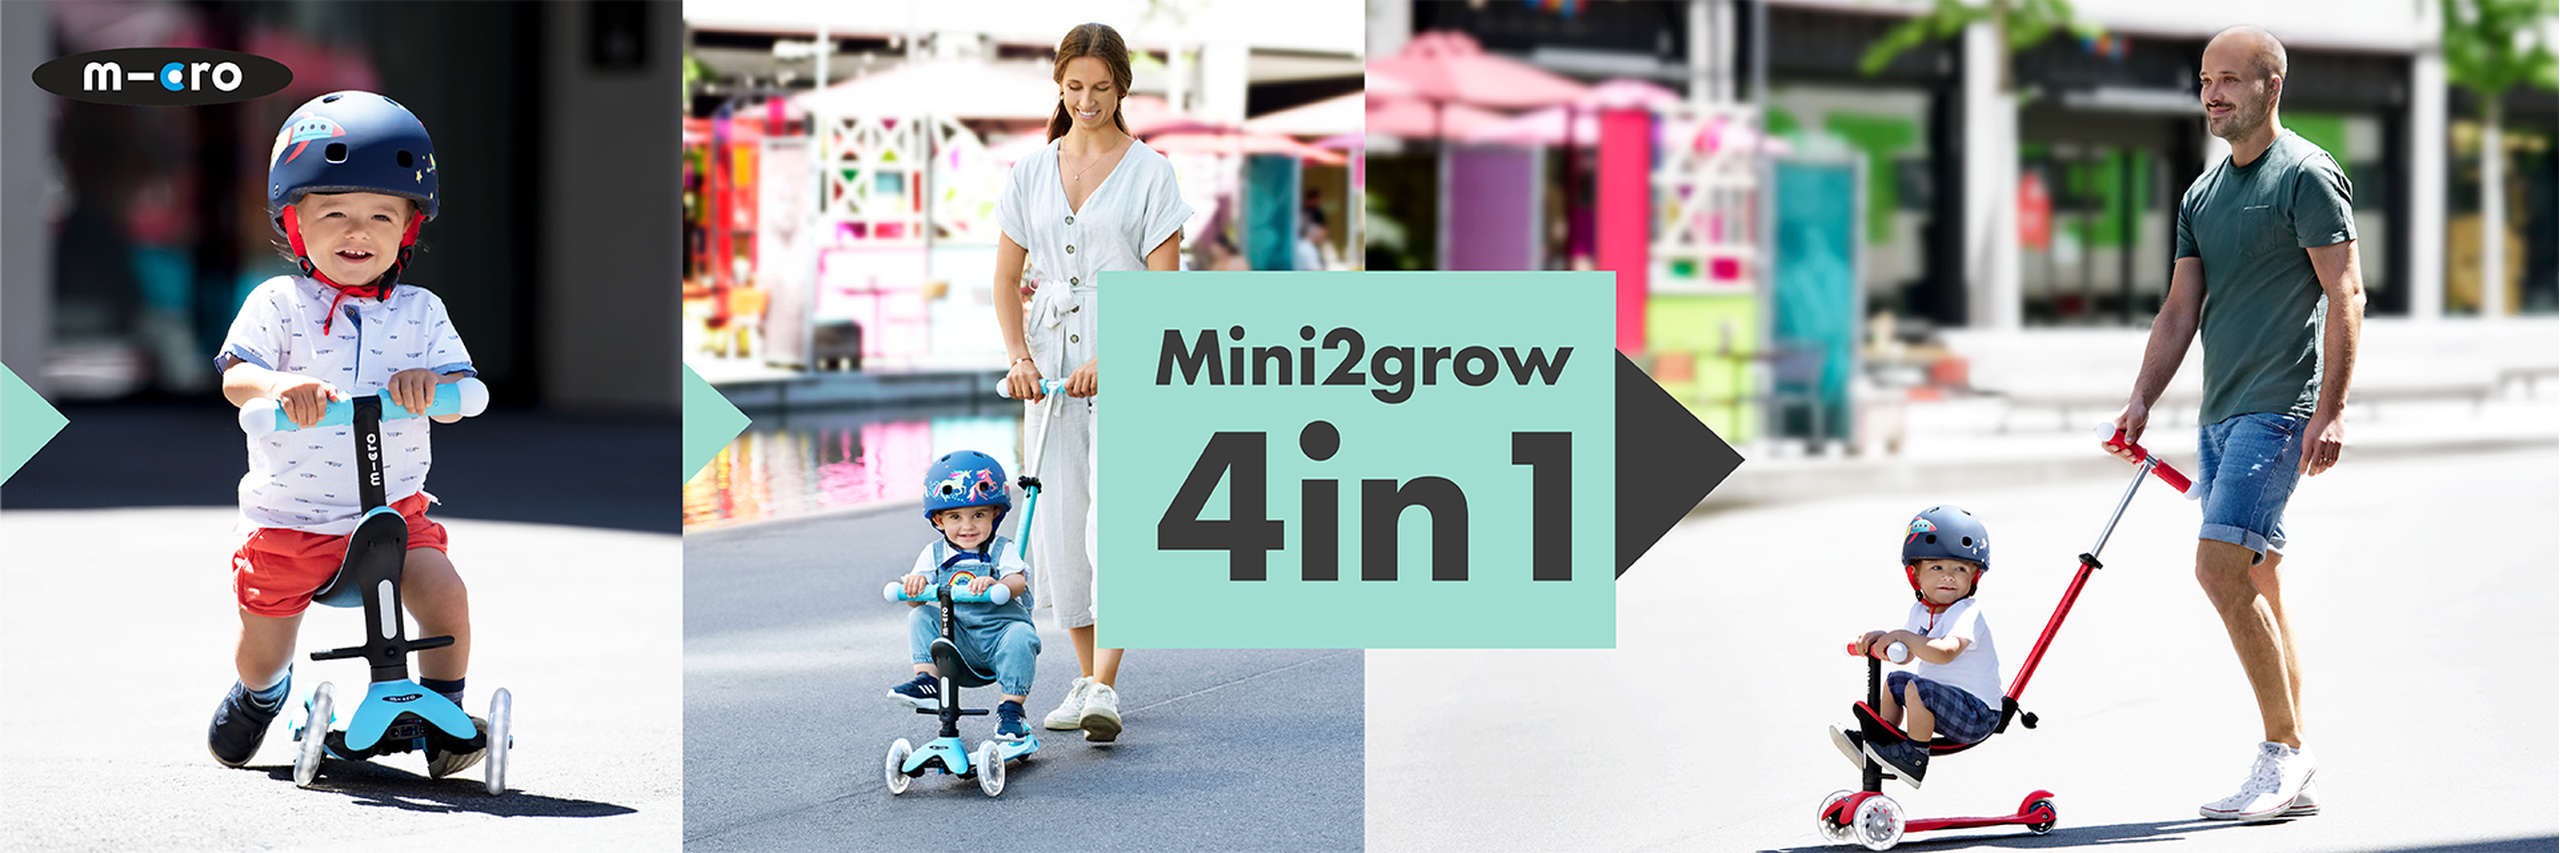 Mini2grow 4in1 Micro Πατίνι